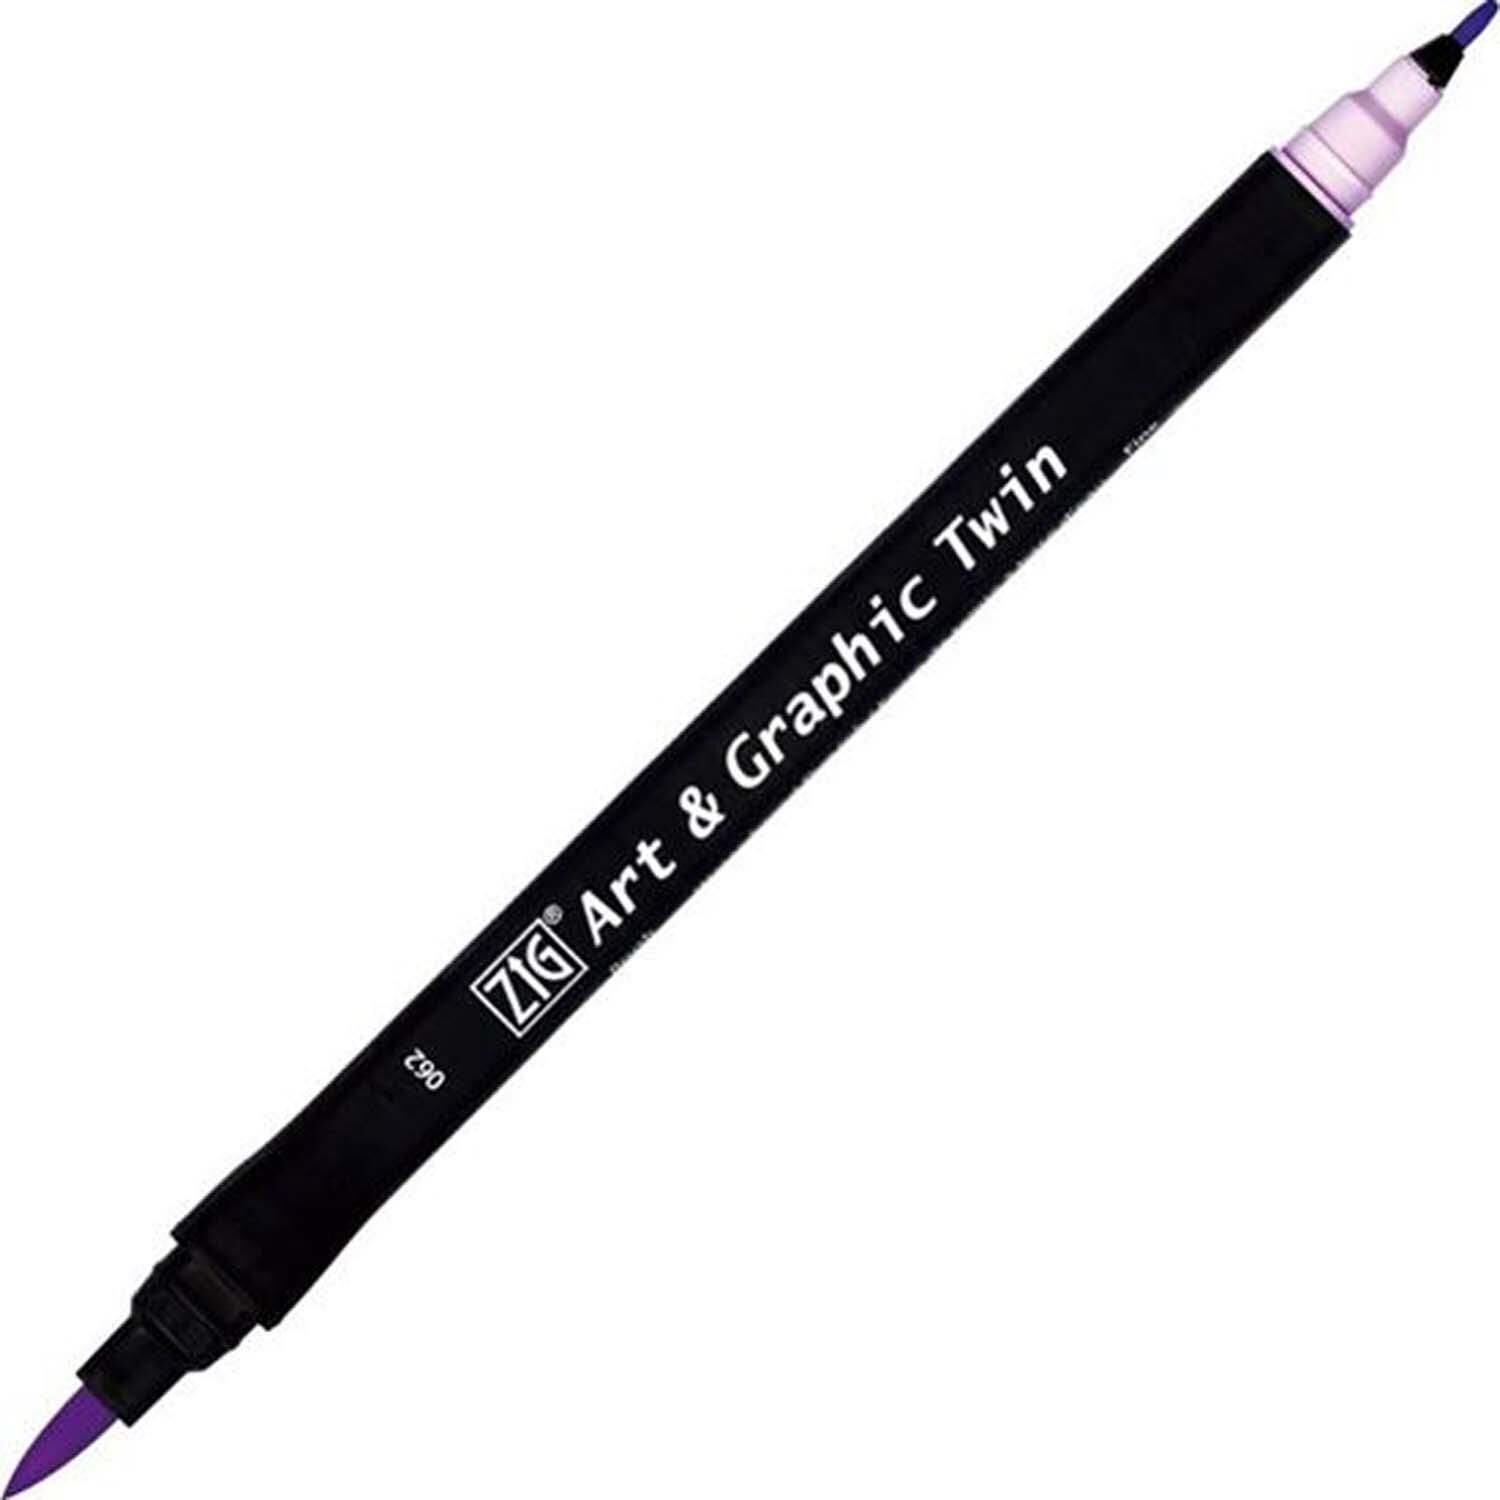 Zıg Brush Pen 062 Lilac